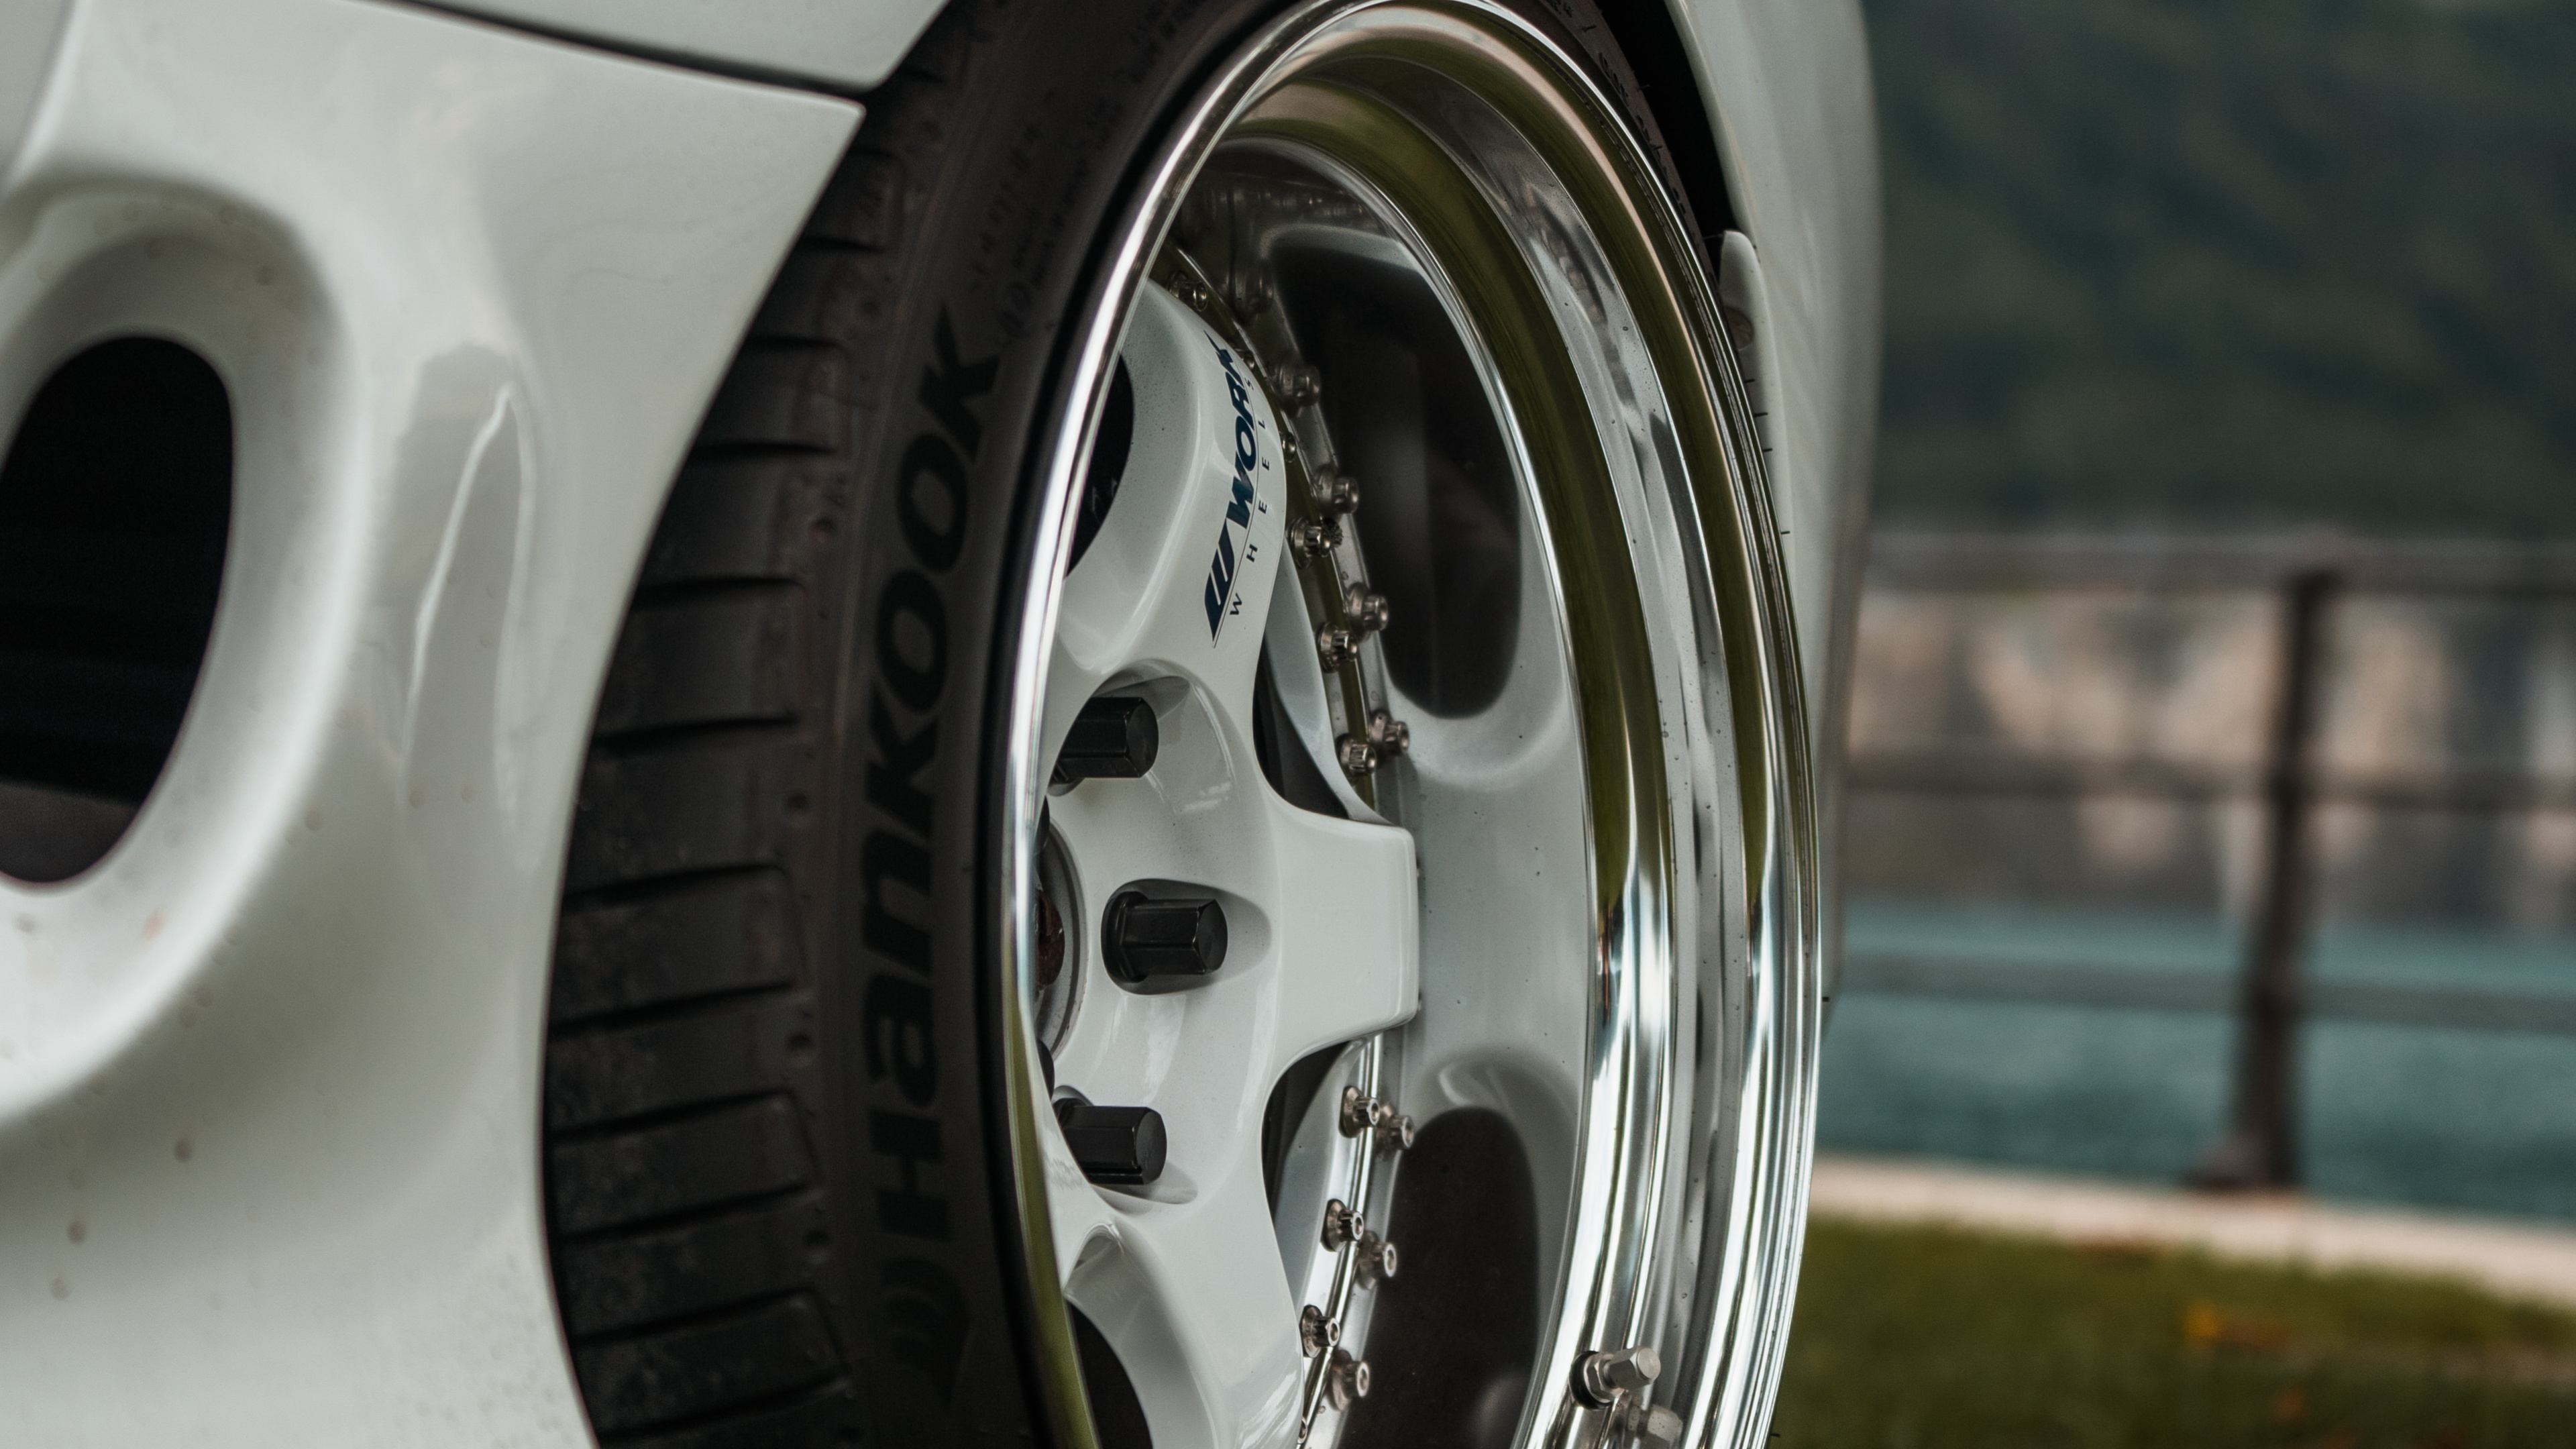 Rim, 轮胎, 铝合金轮毂, 汽车轮胎, 自动的一部分 壁纸 3840x2160 允许